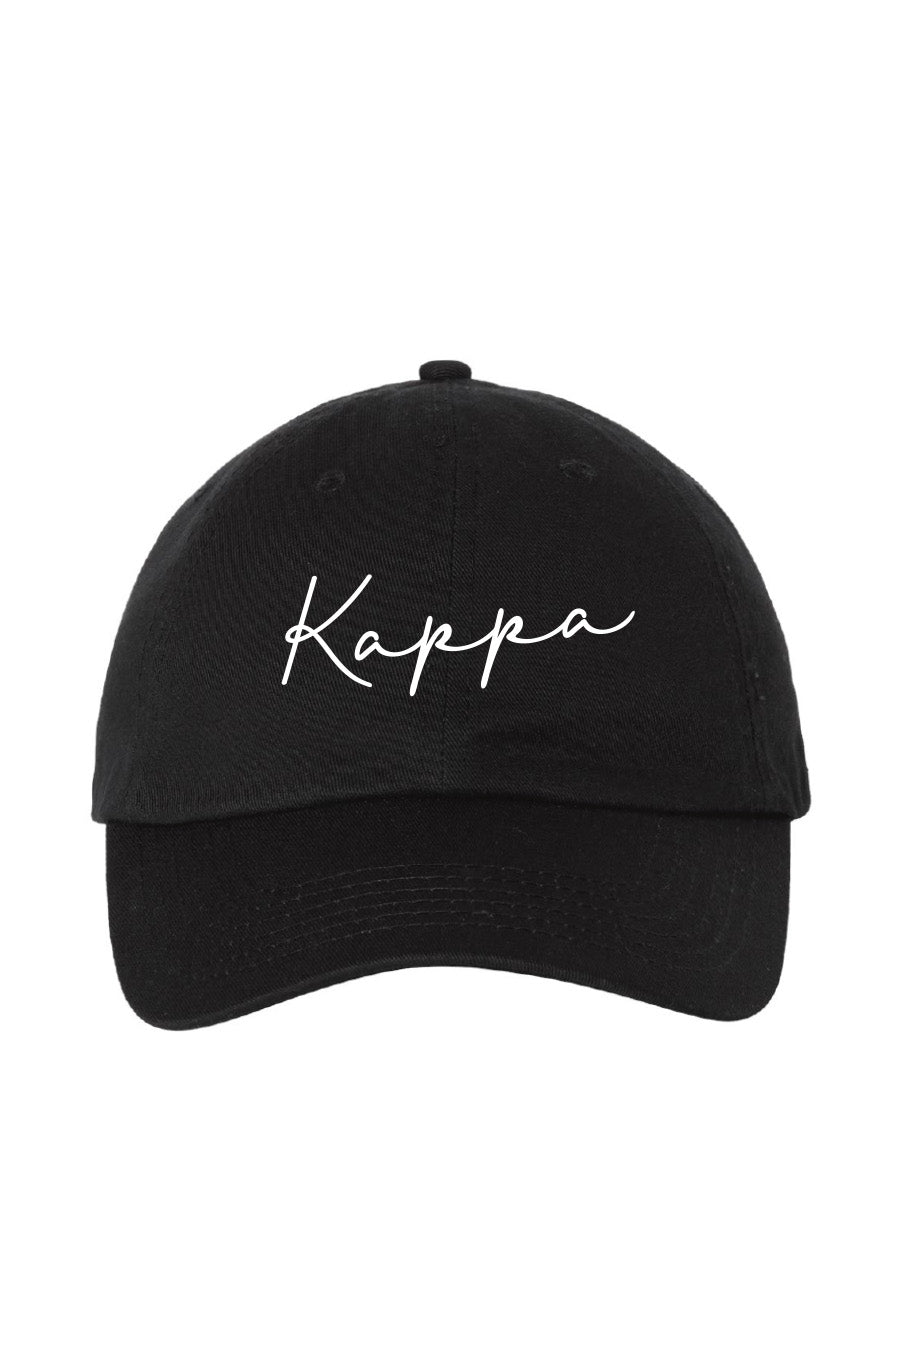 Kappa Script Hat